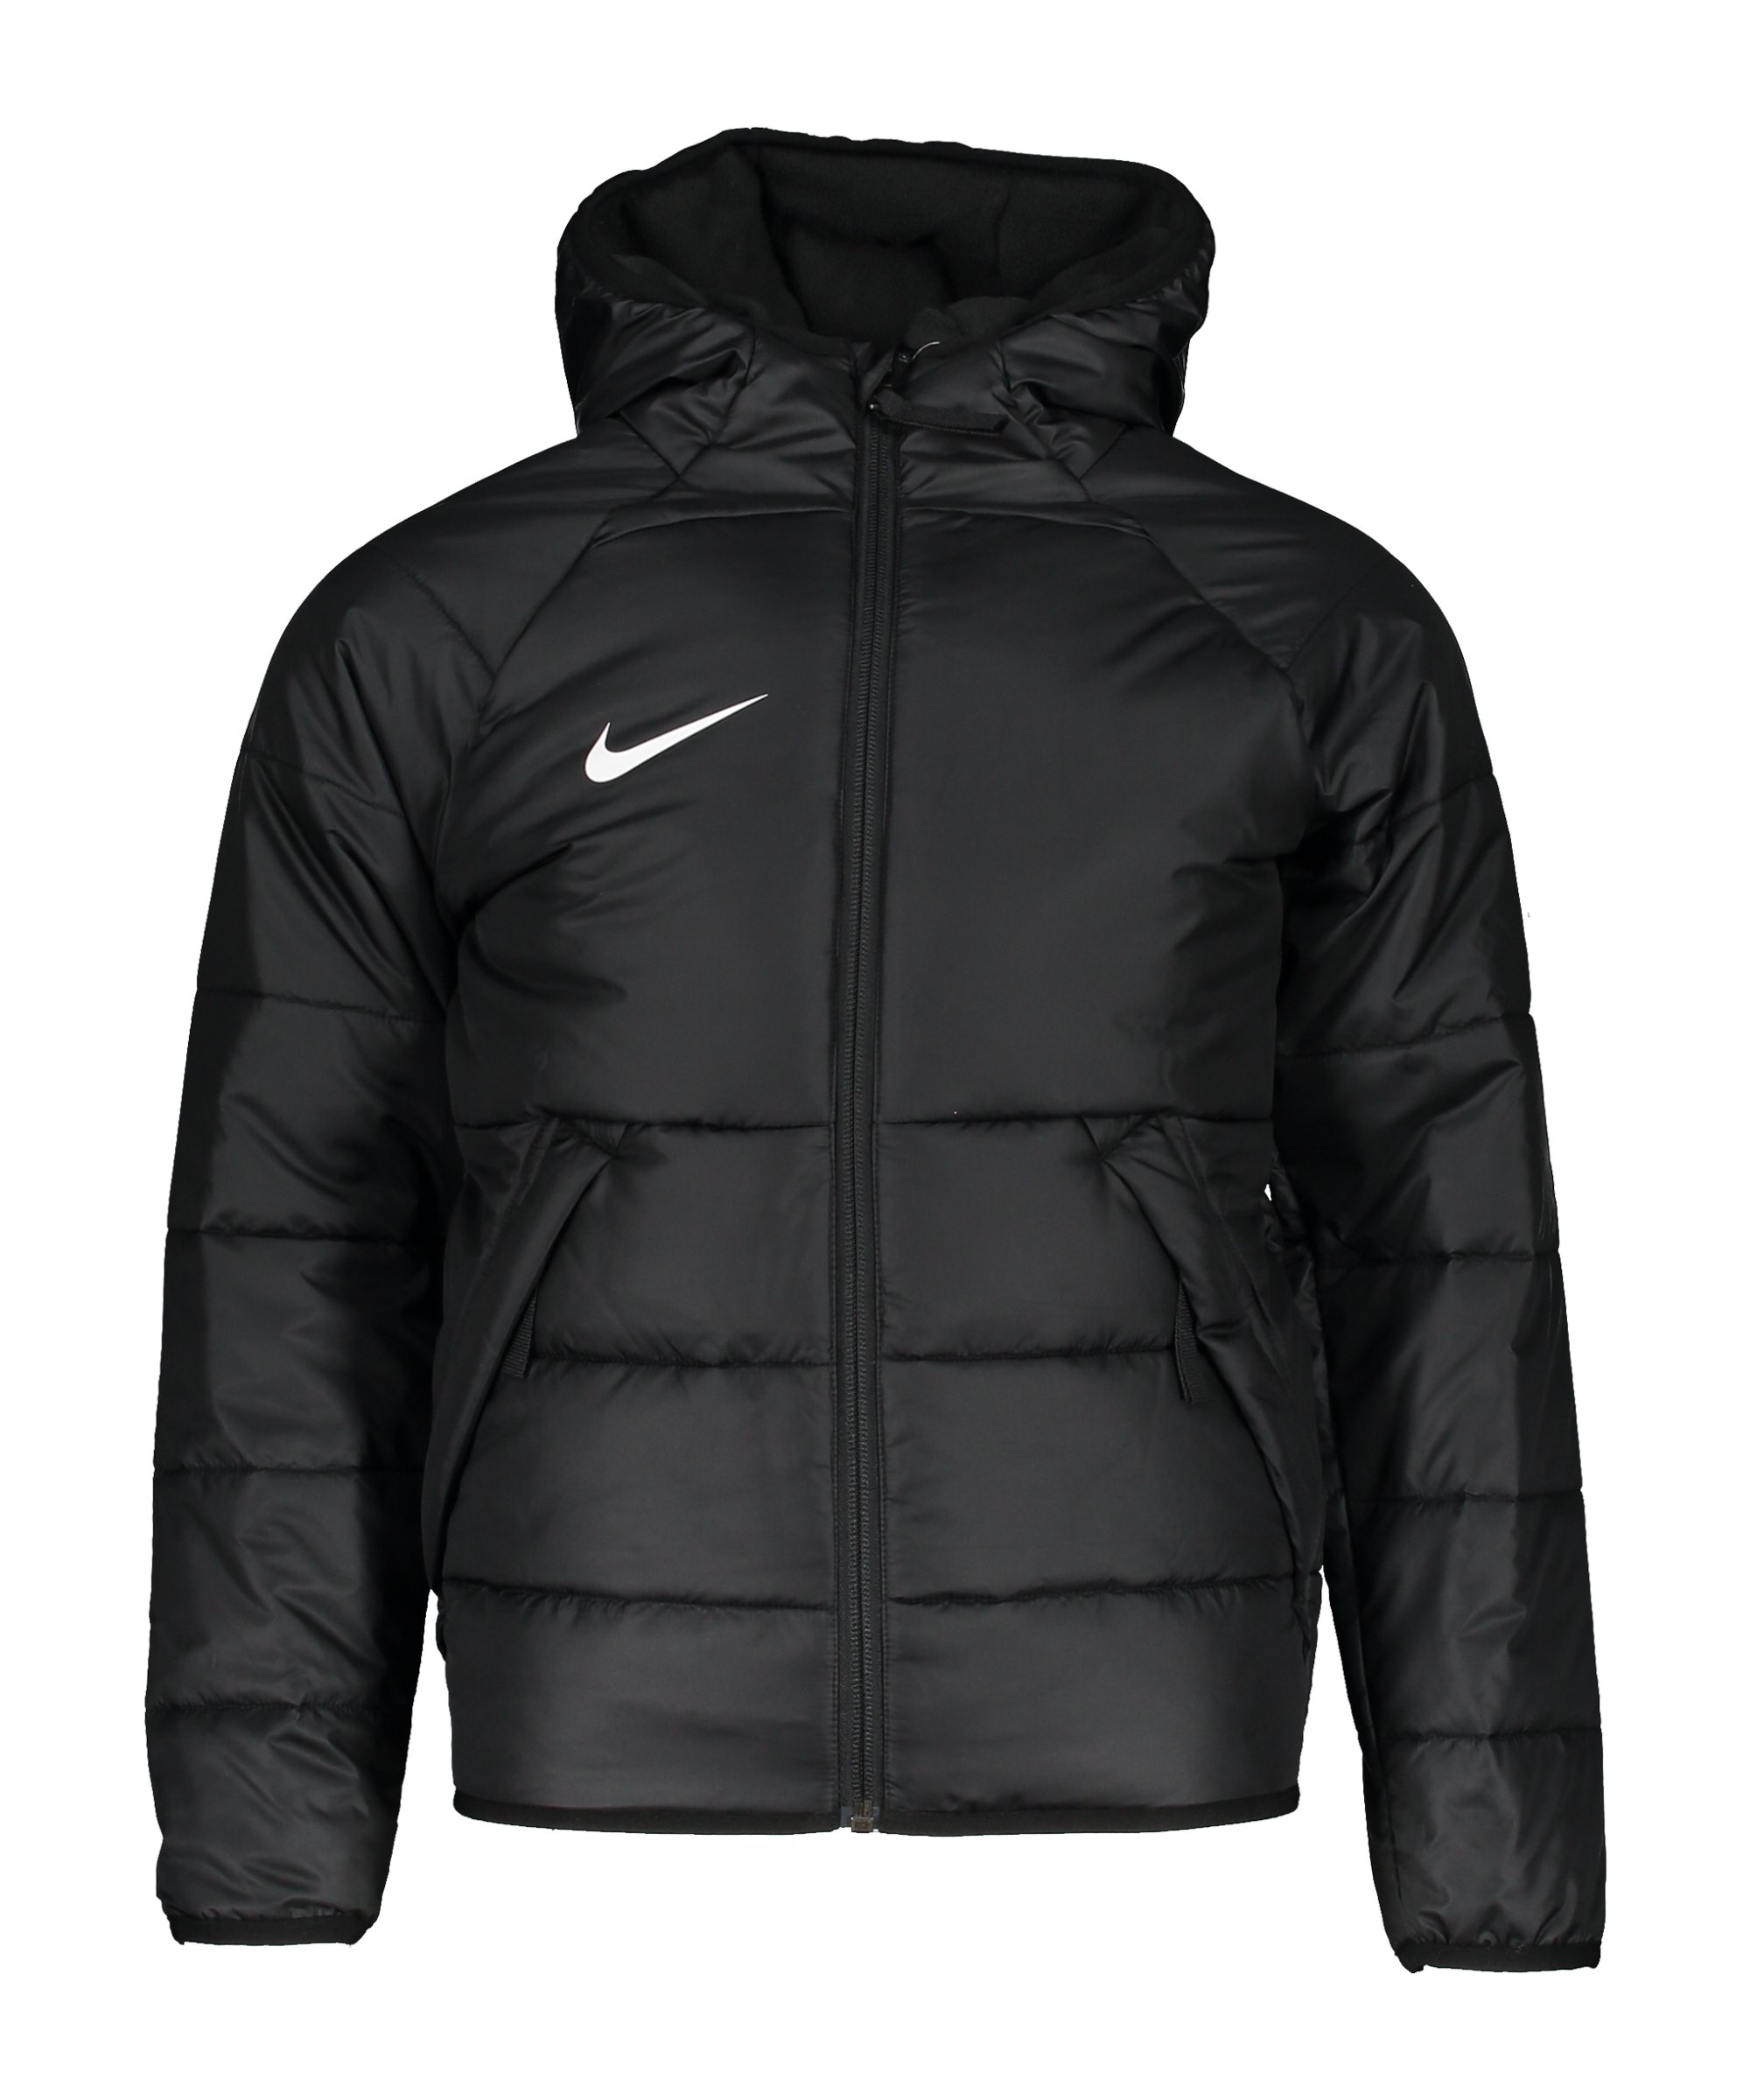 Nike Therma-FIT Academy Pro Jacke Kids F010 - schwarz